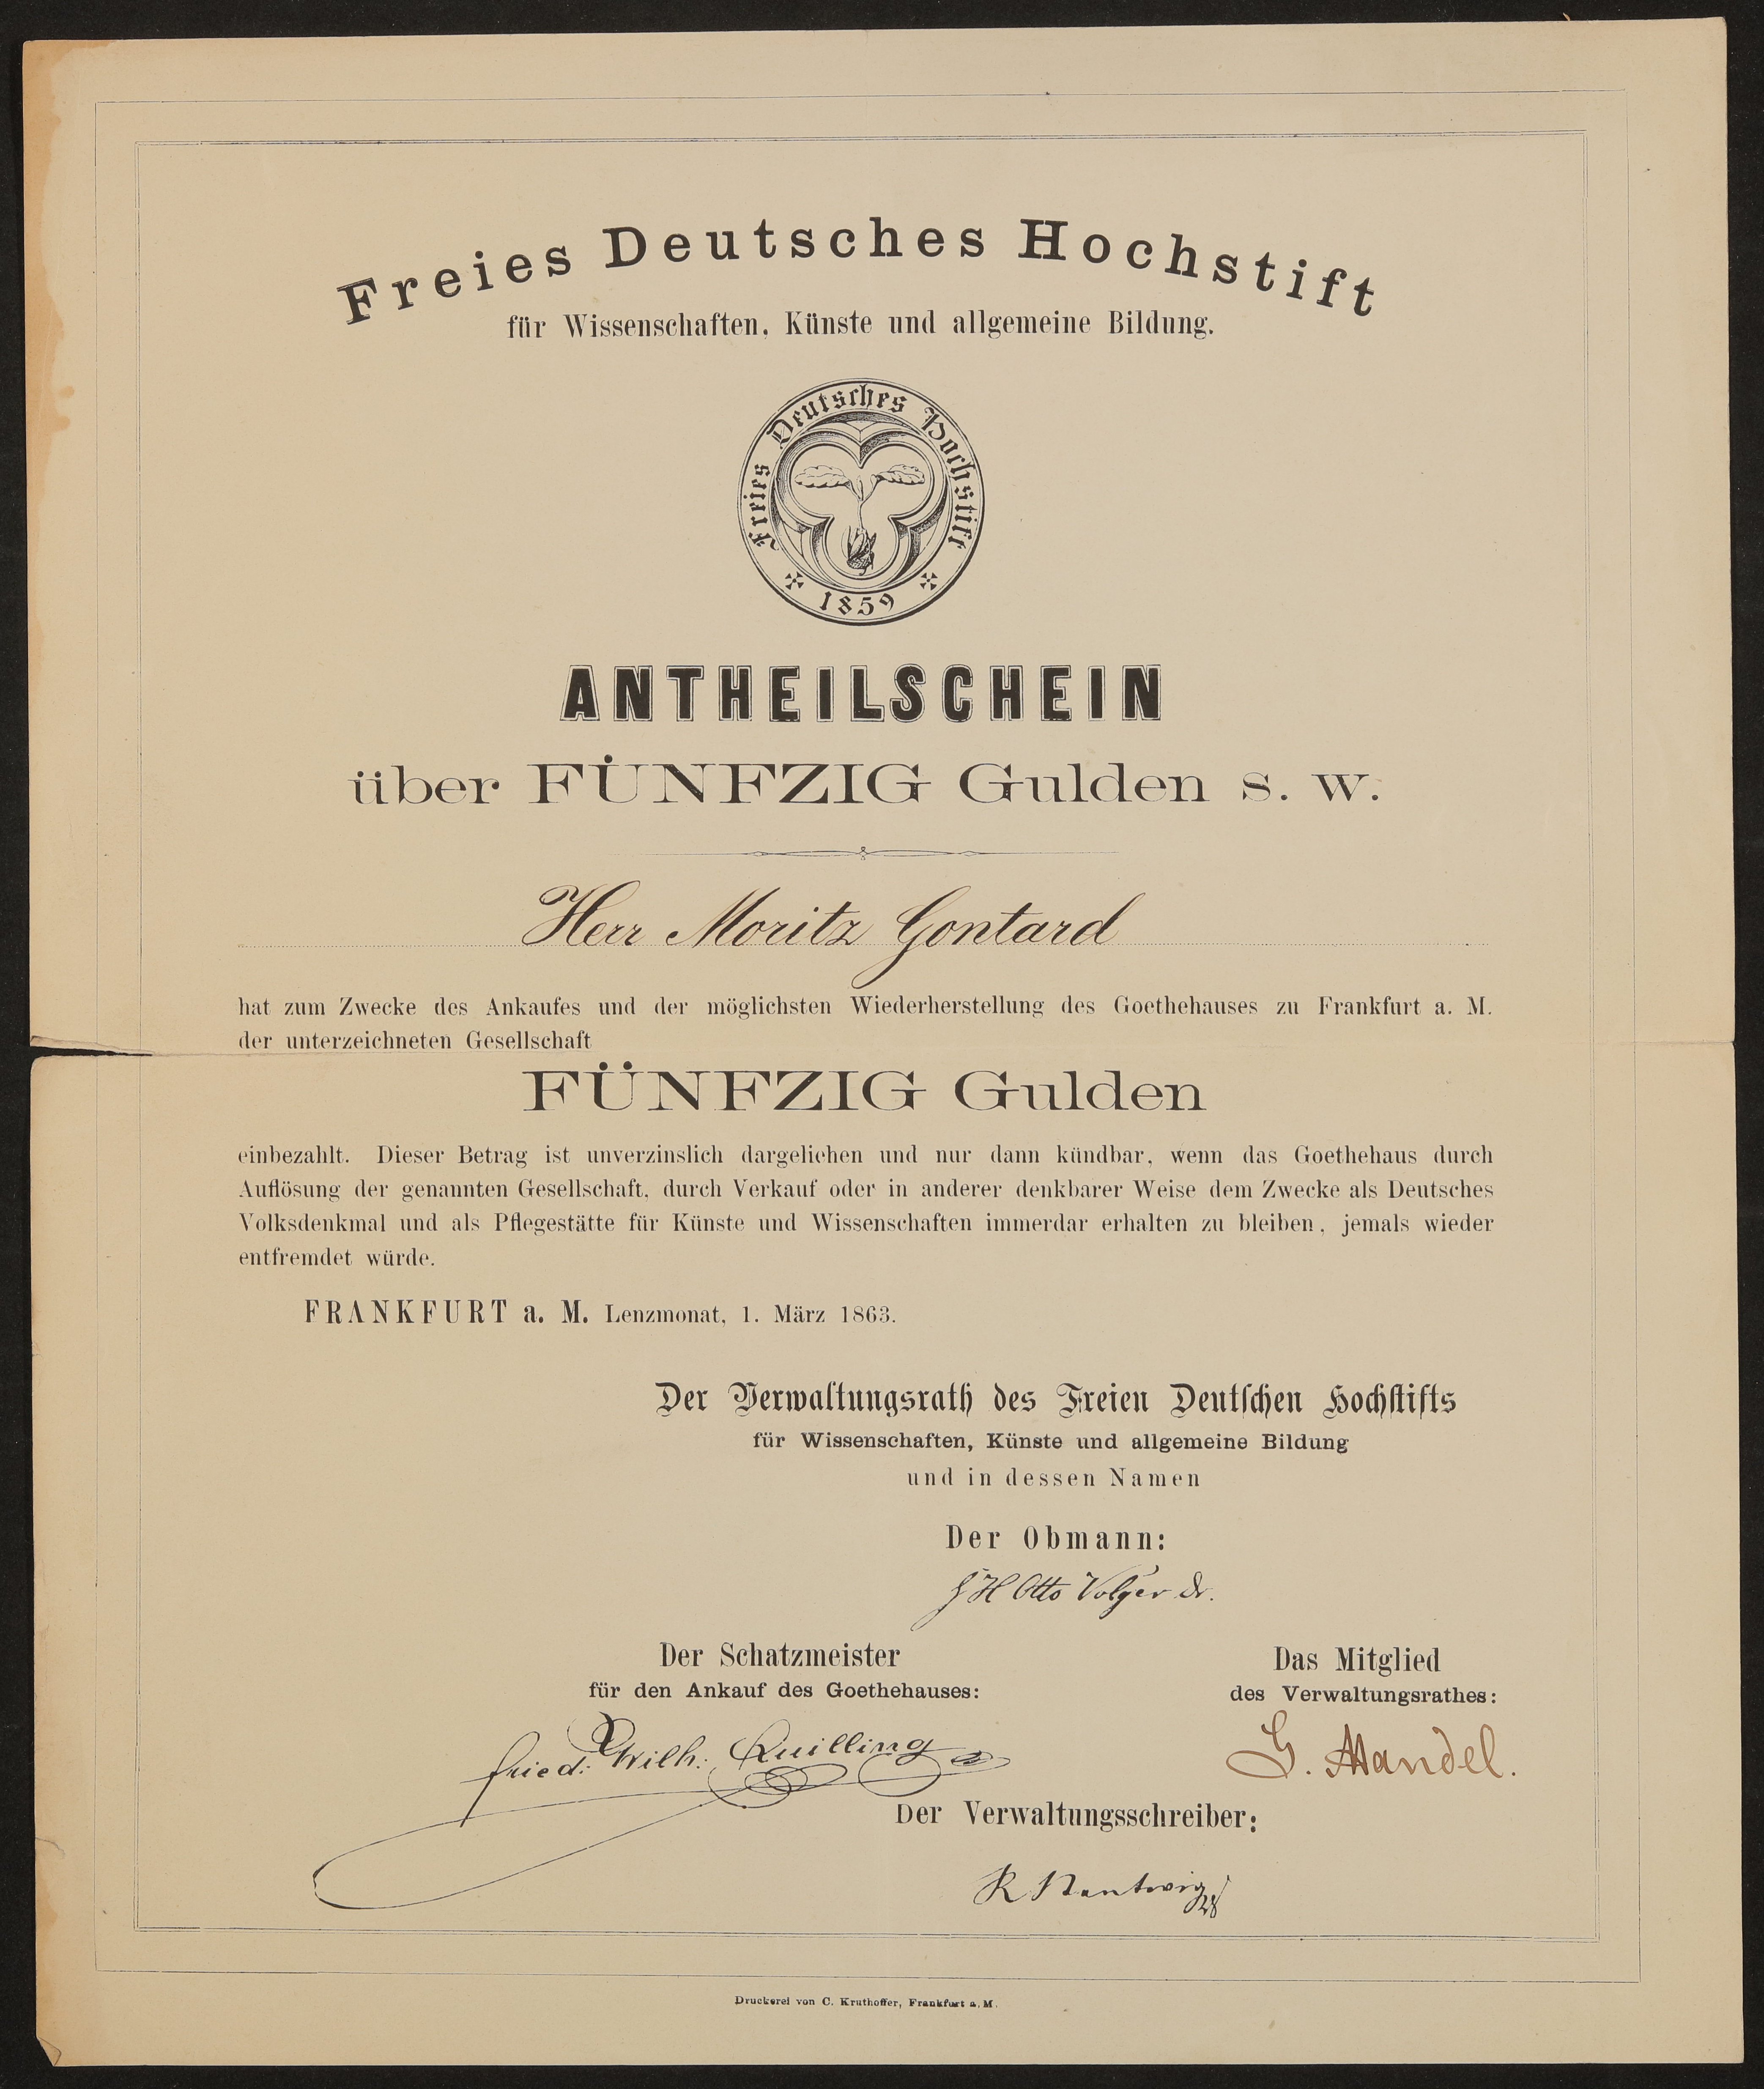 Hs-31599_002 (Freies Deutsches Hochstift / Frankfurter Goethe-Museum Public Domain Mark)